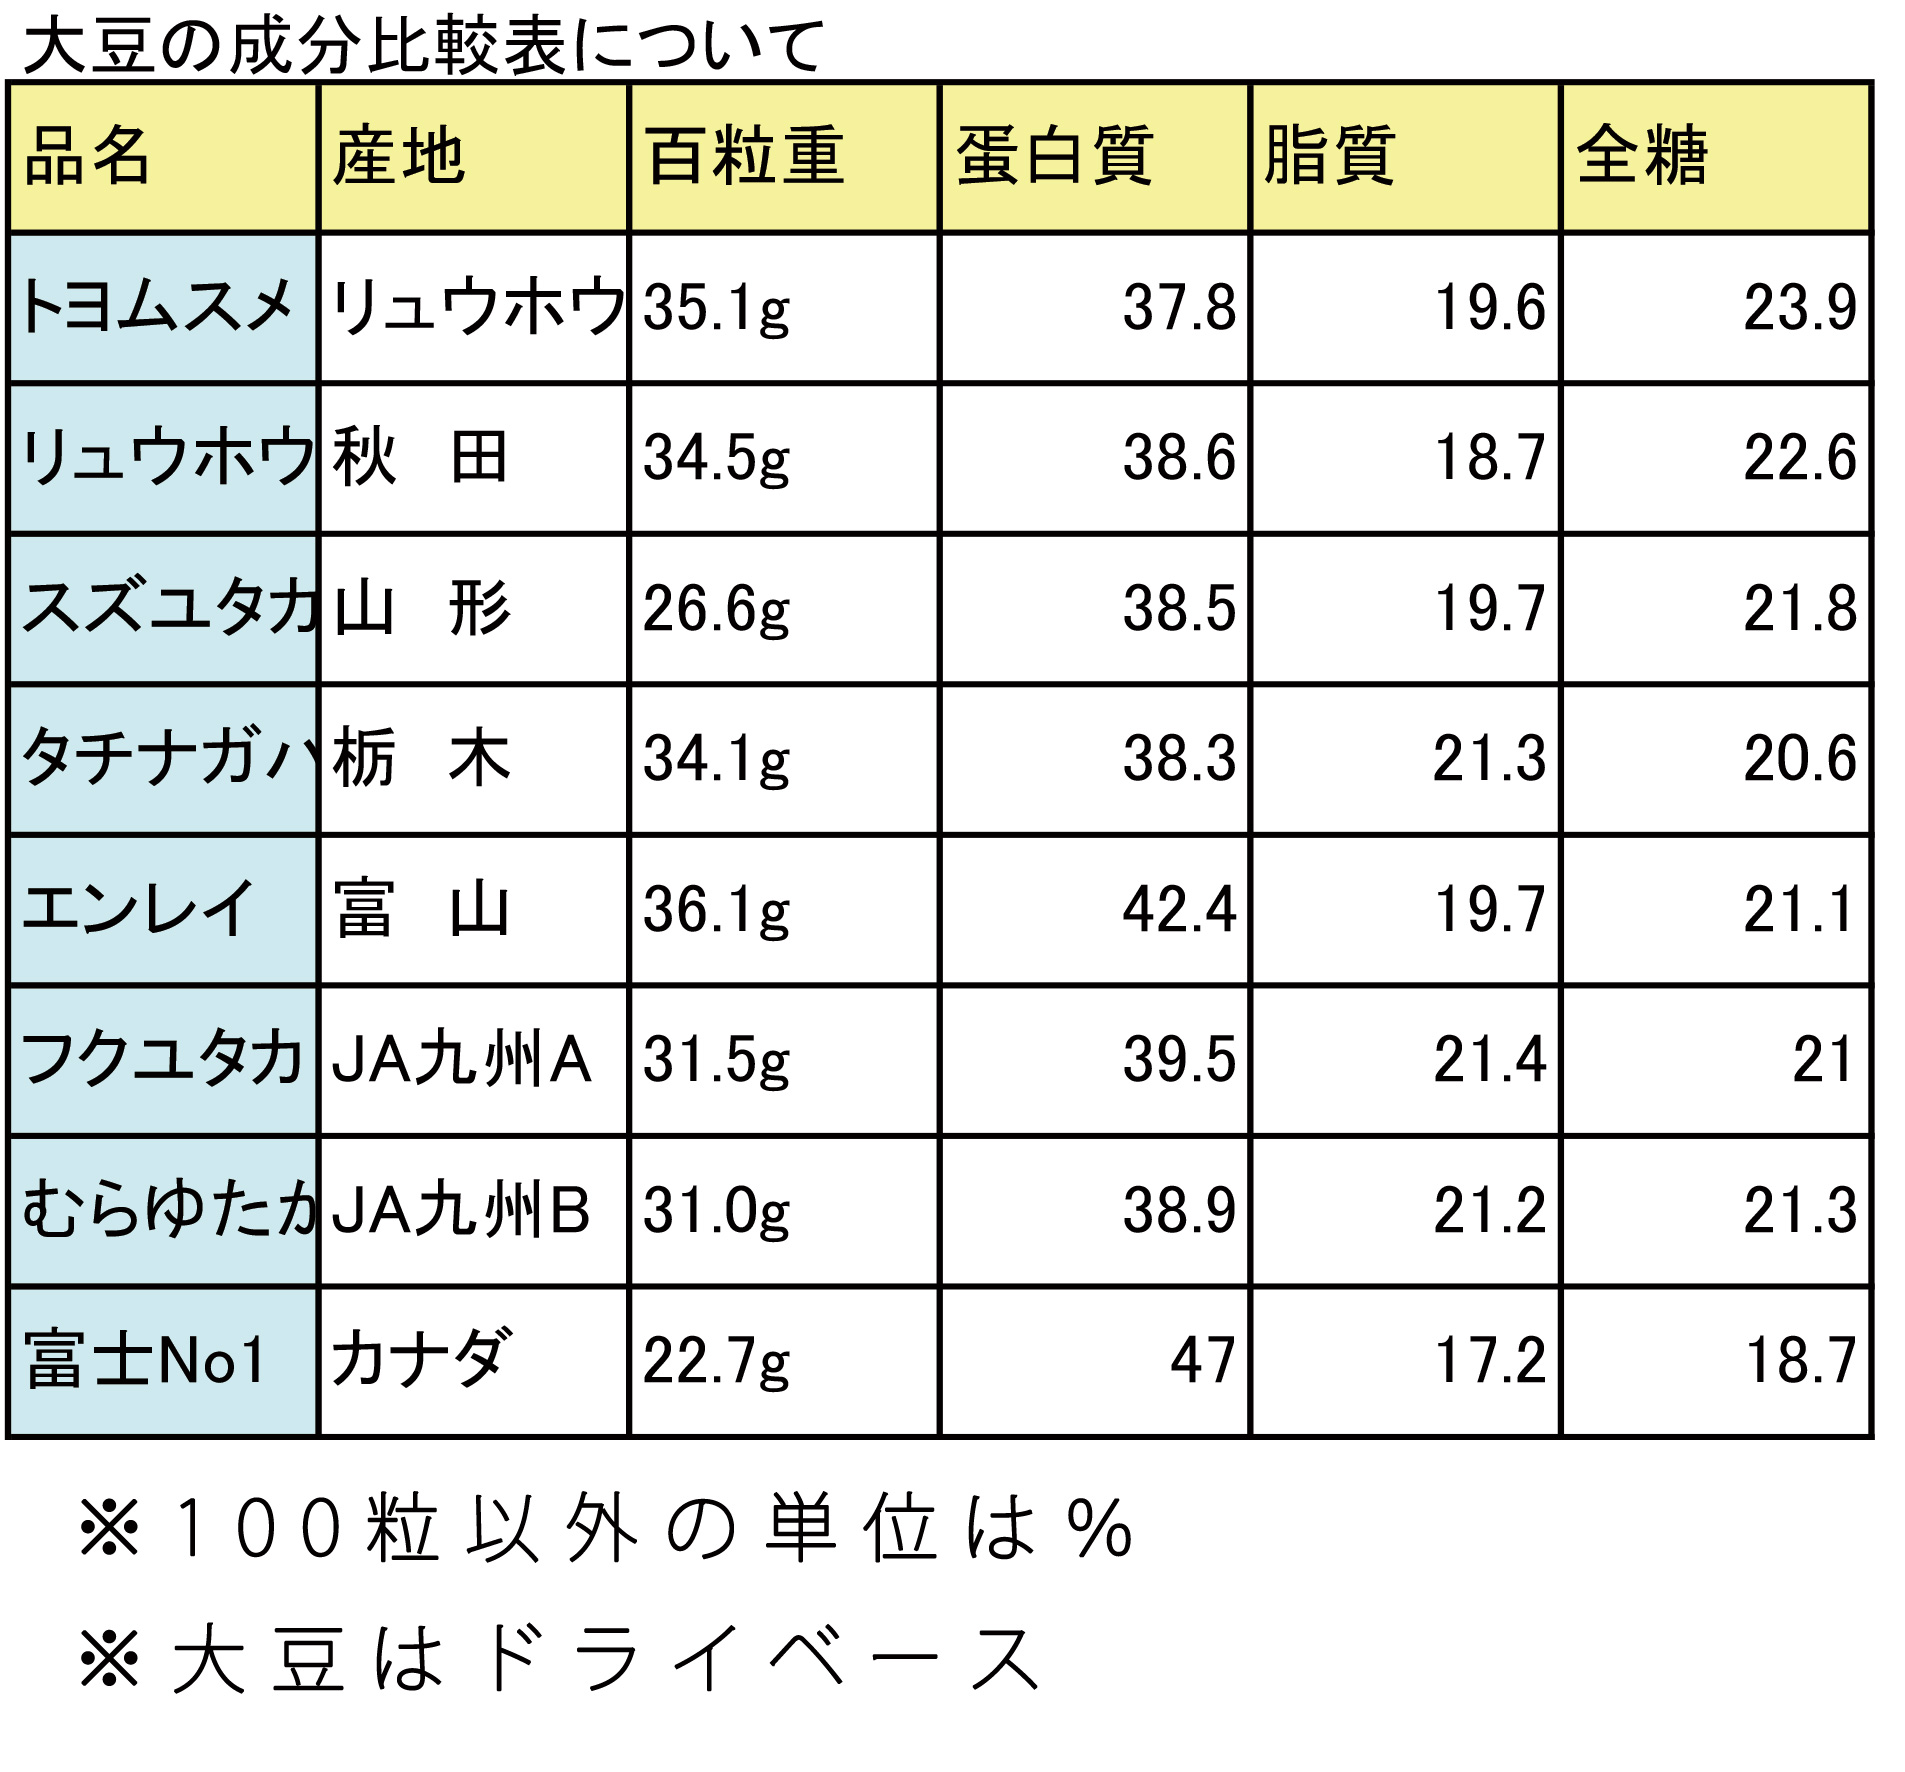 奥澤豆腐店で使う大豆と国産大豆の成分比較表